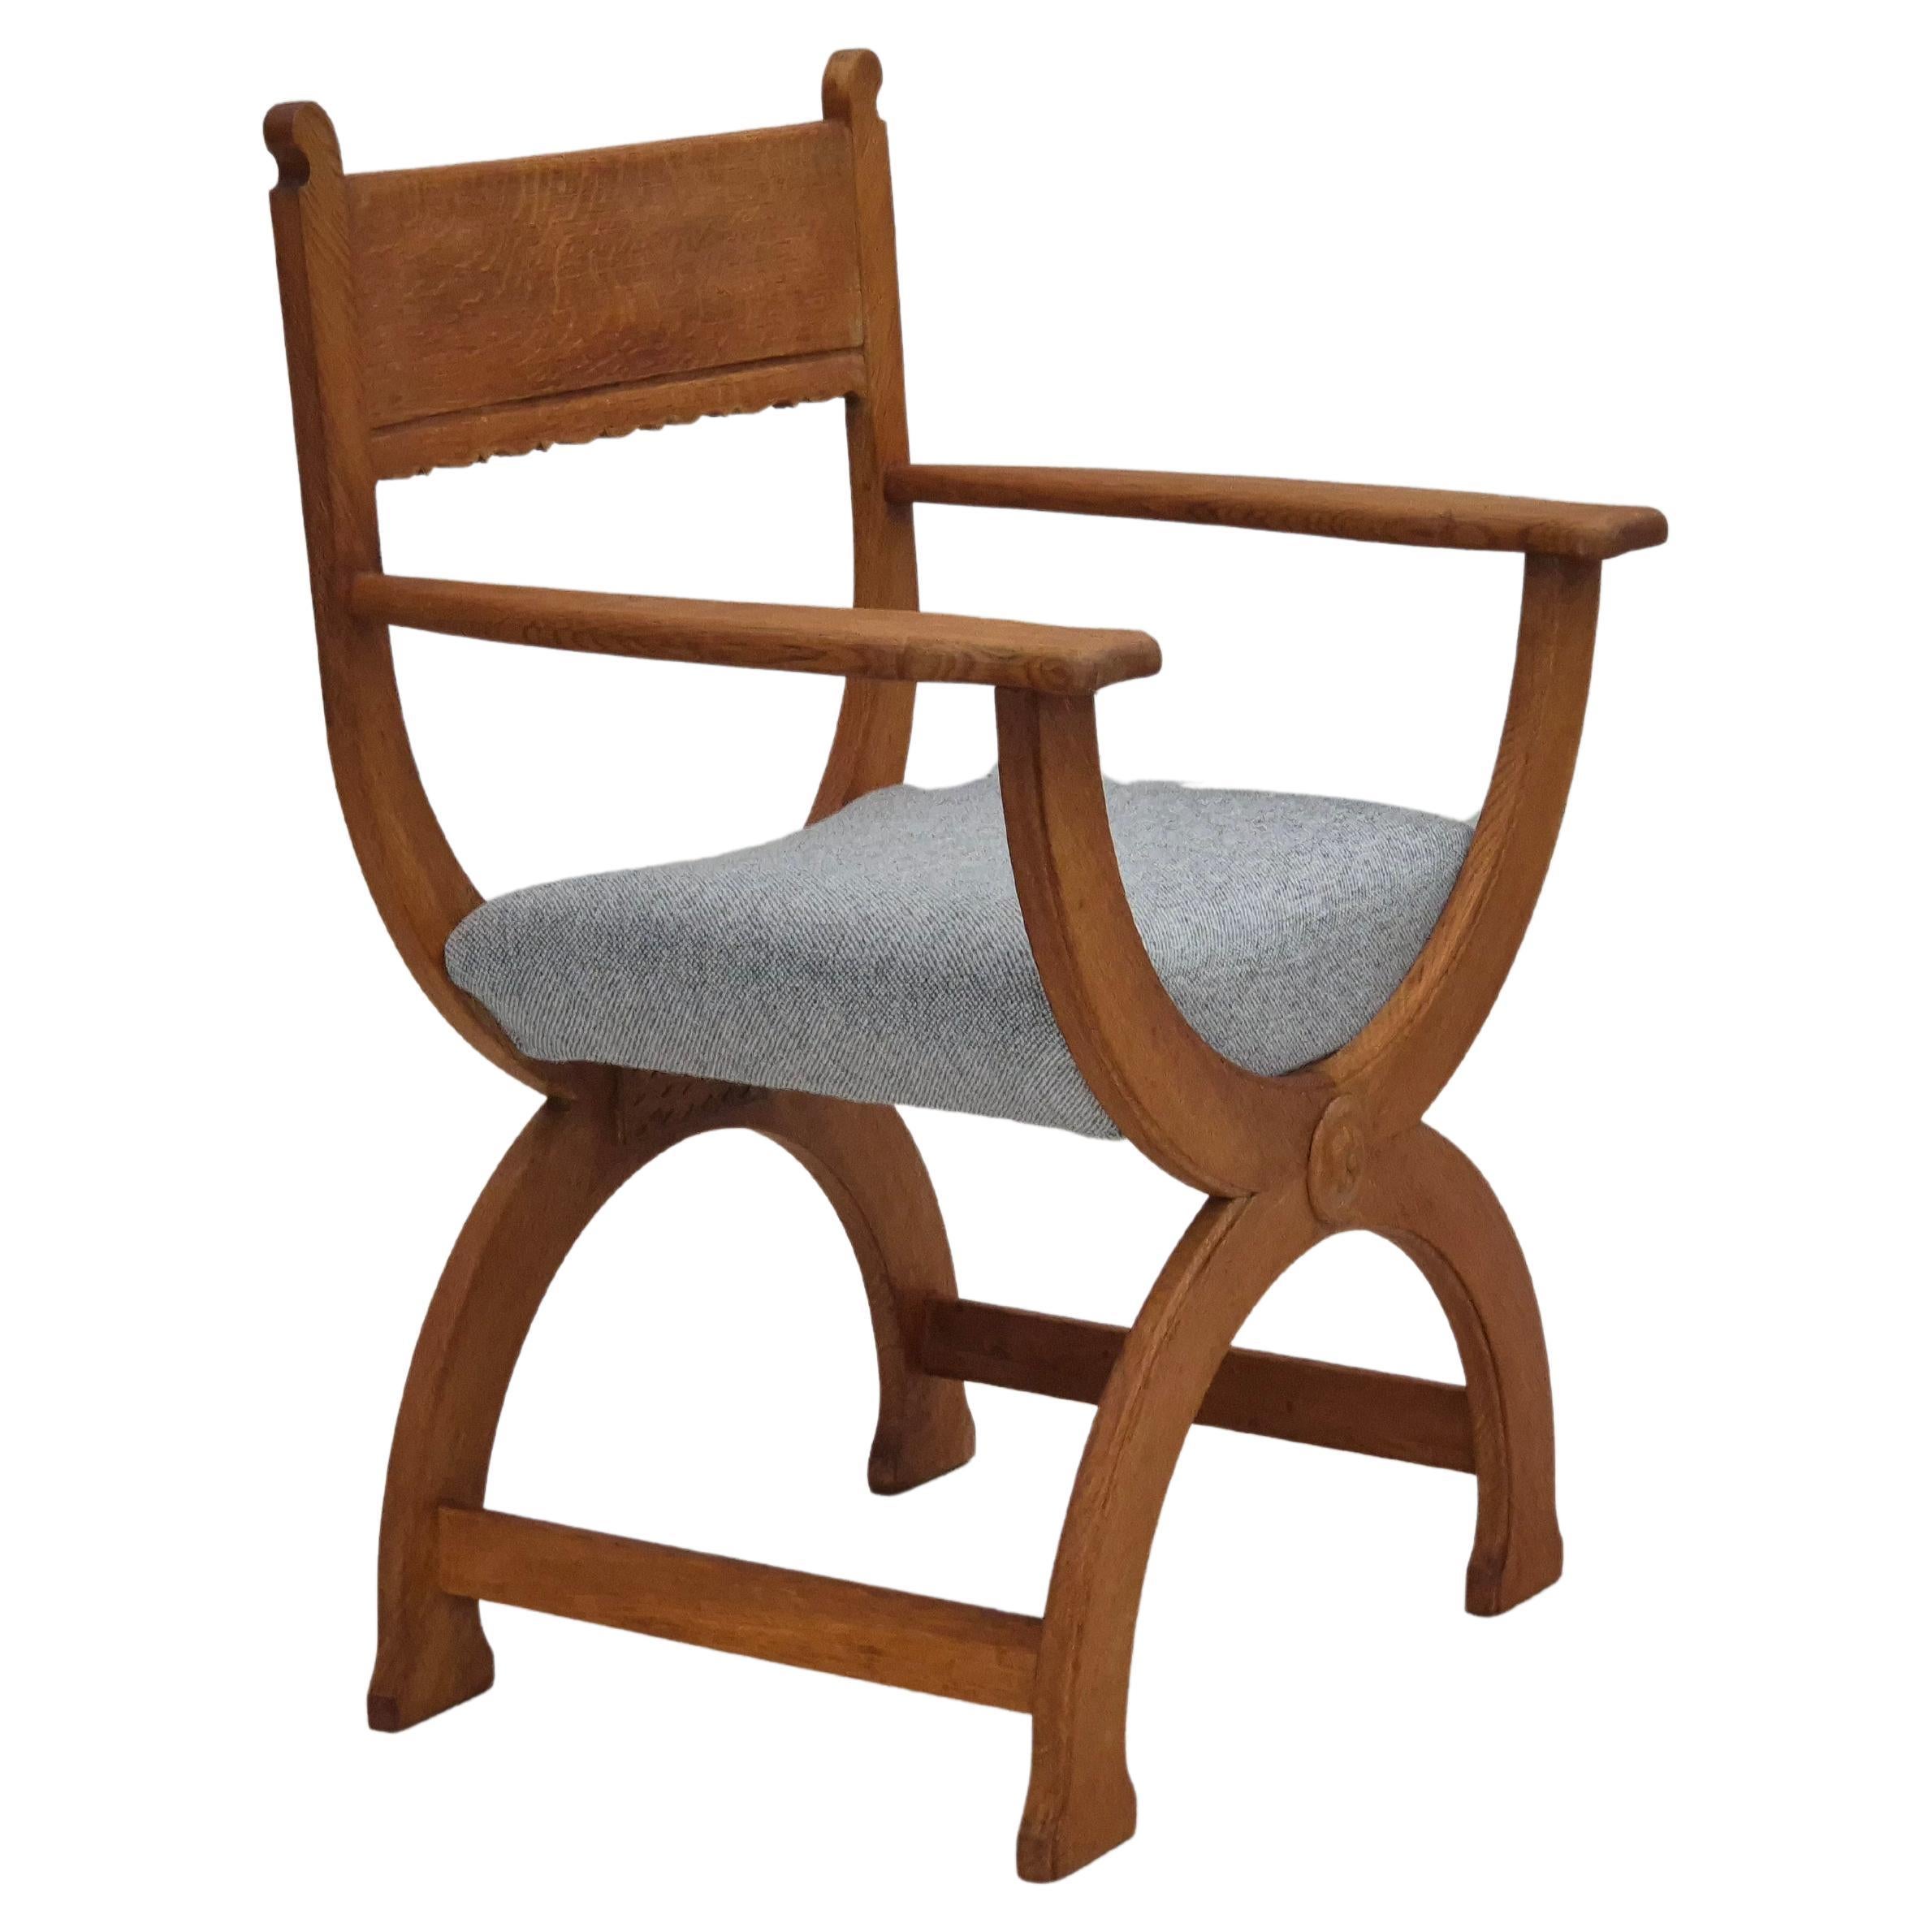 Fauteuil danois des années 1960, en bois de chêne massif, reupholstered, KVADRAT furniture wool.